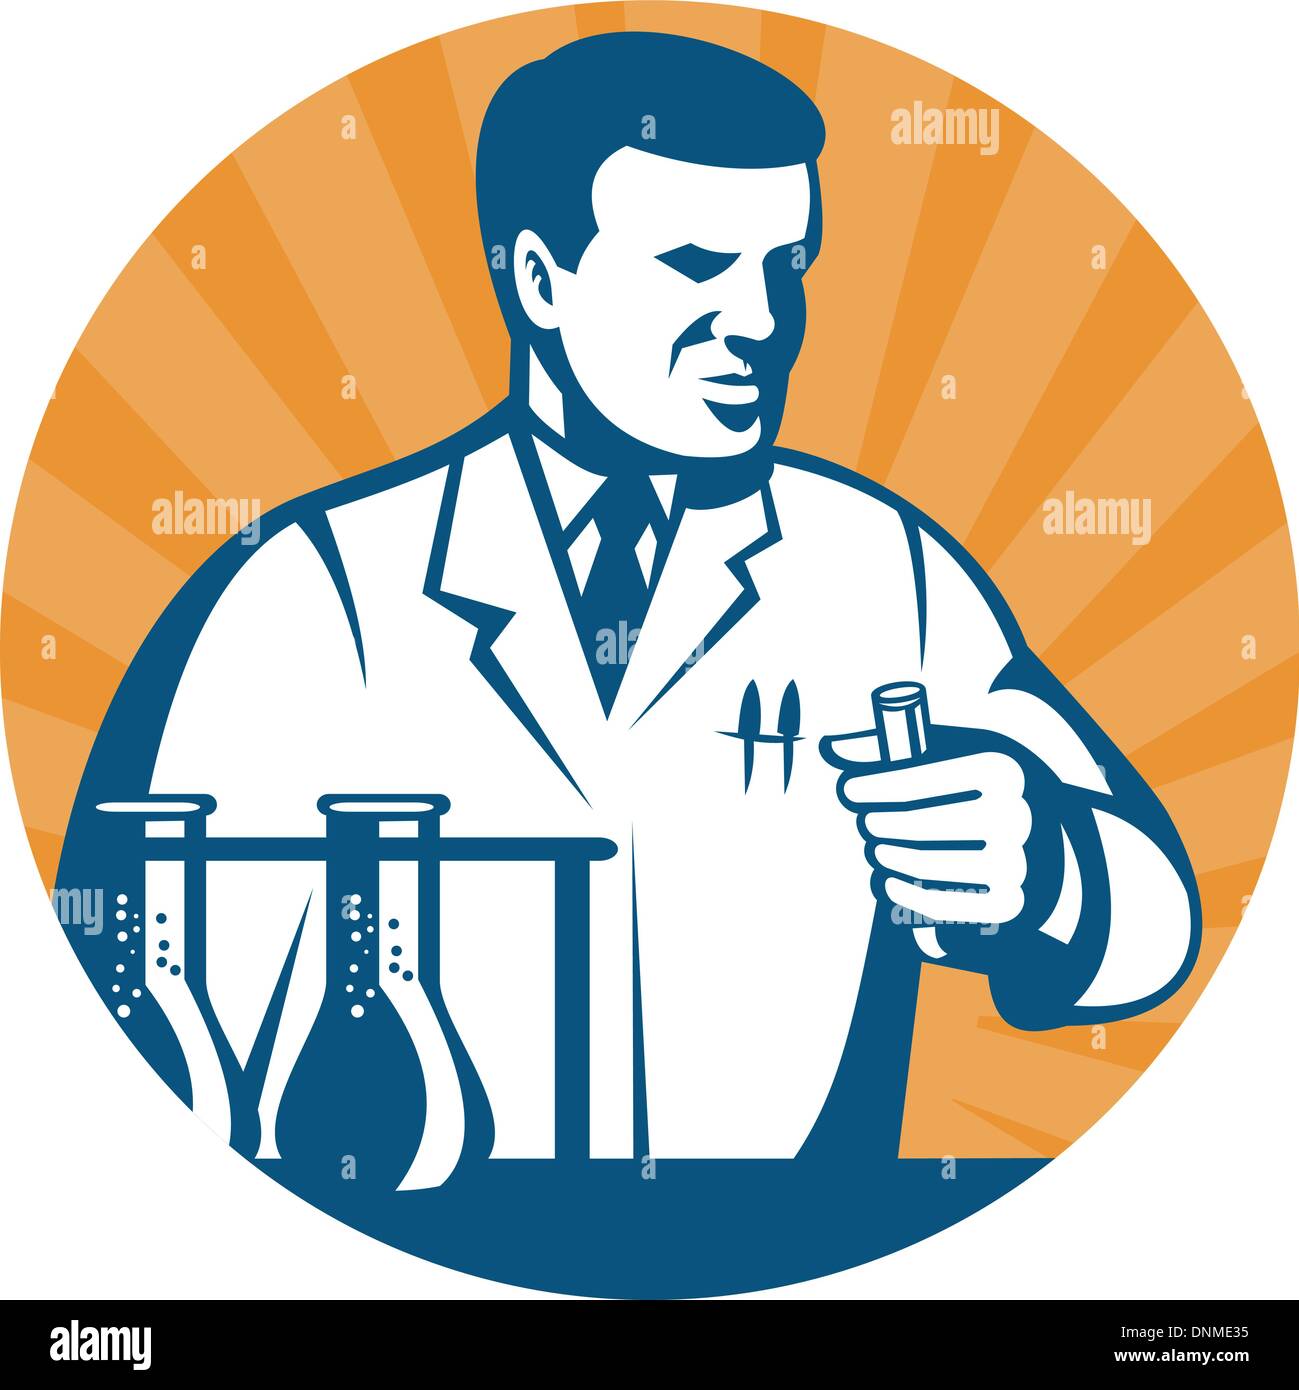 Abbildung von einem Wissenschaftler oder Forschung und Entwicklung Labortechniker hält eine Flasche oder in einem Kreis-Testset. Stock Vektor